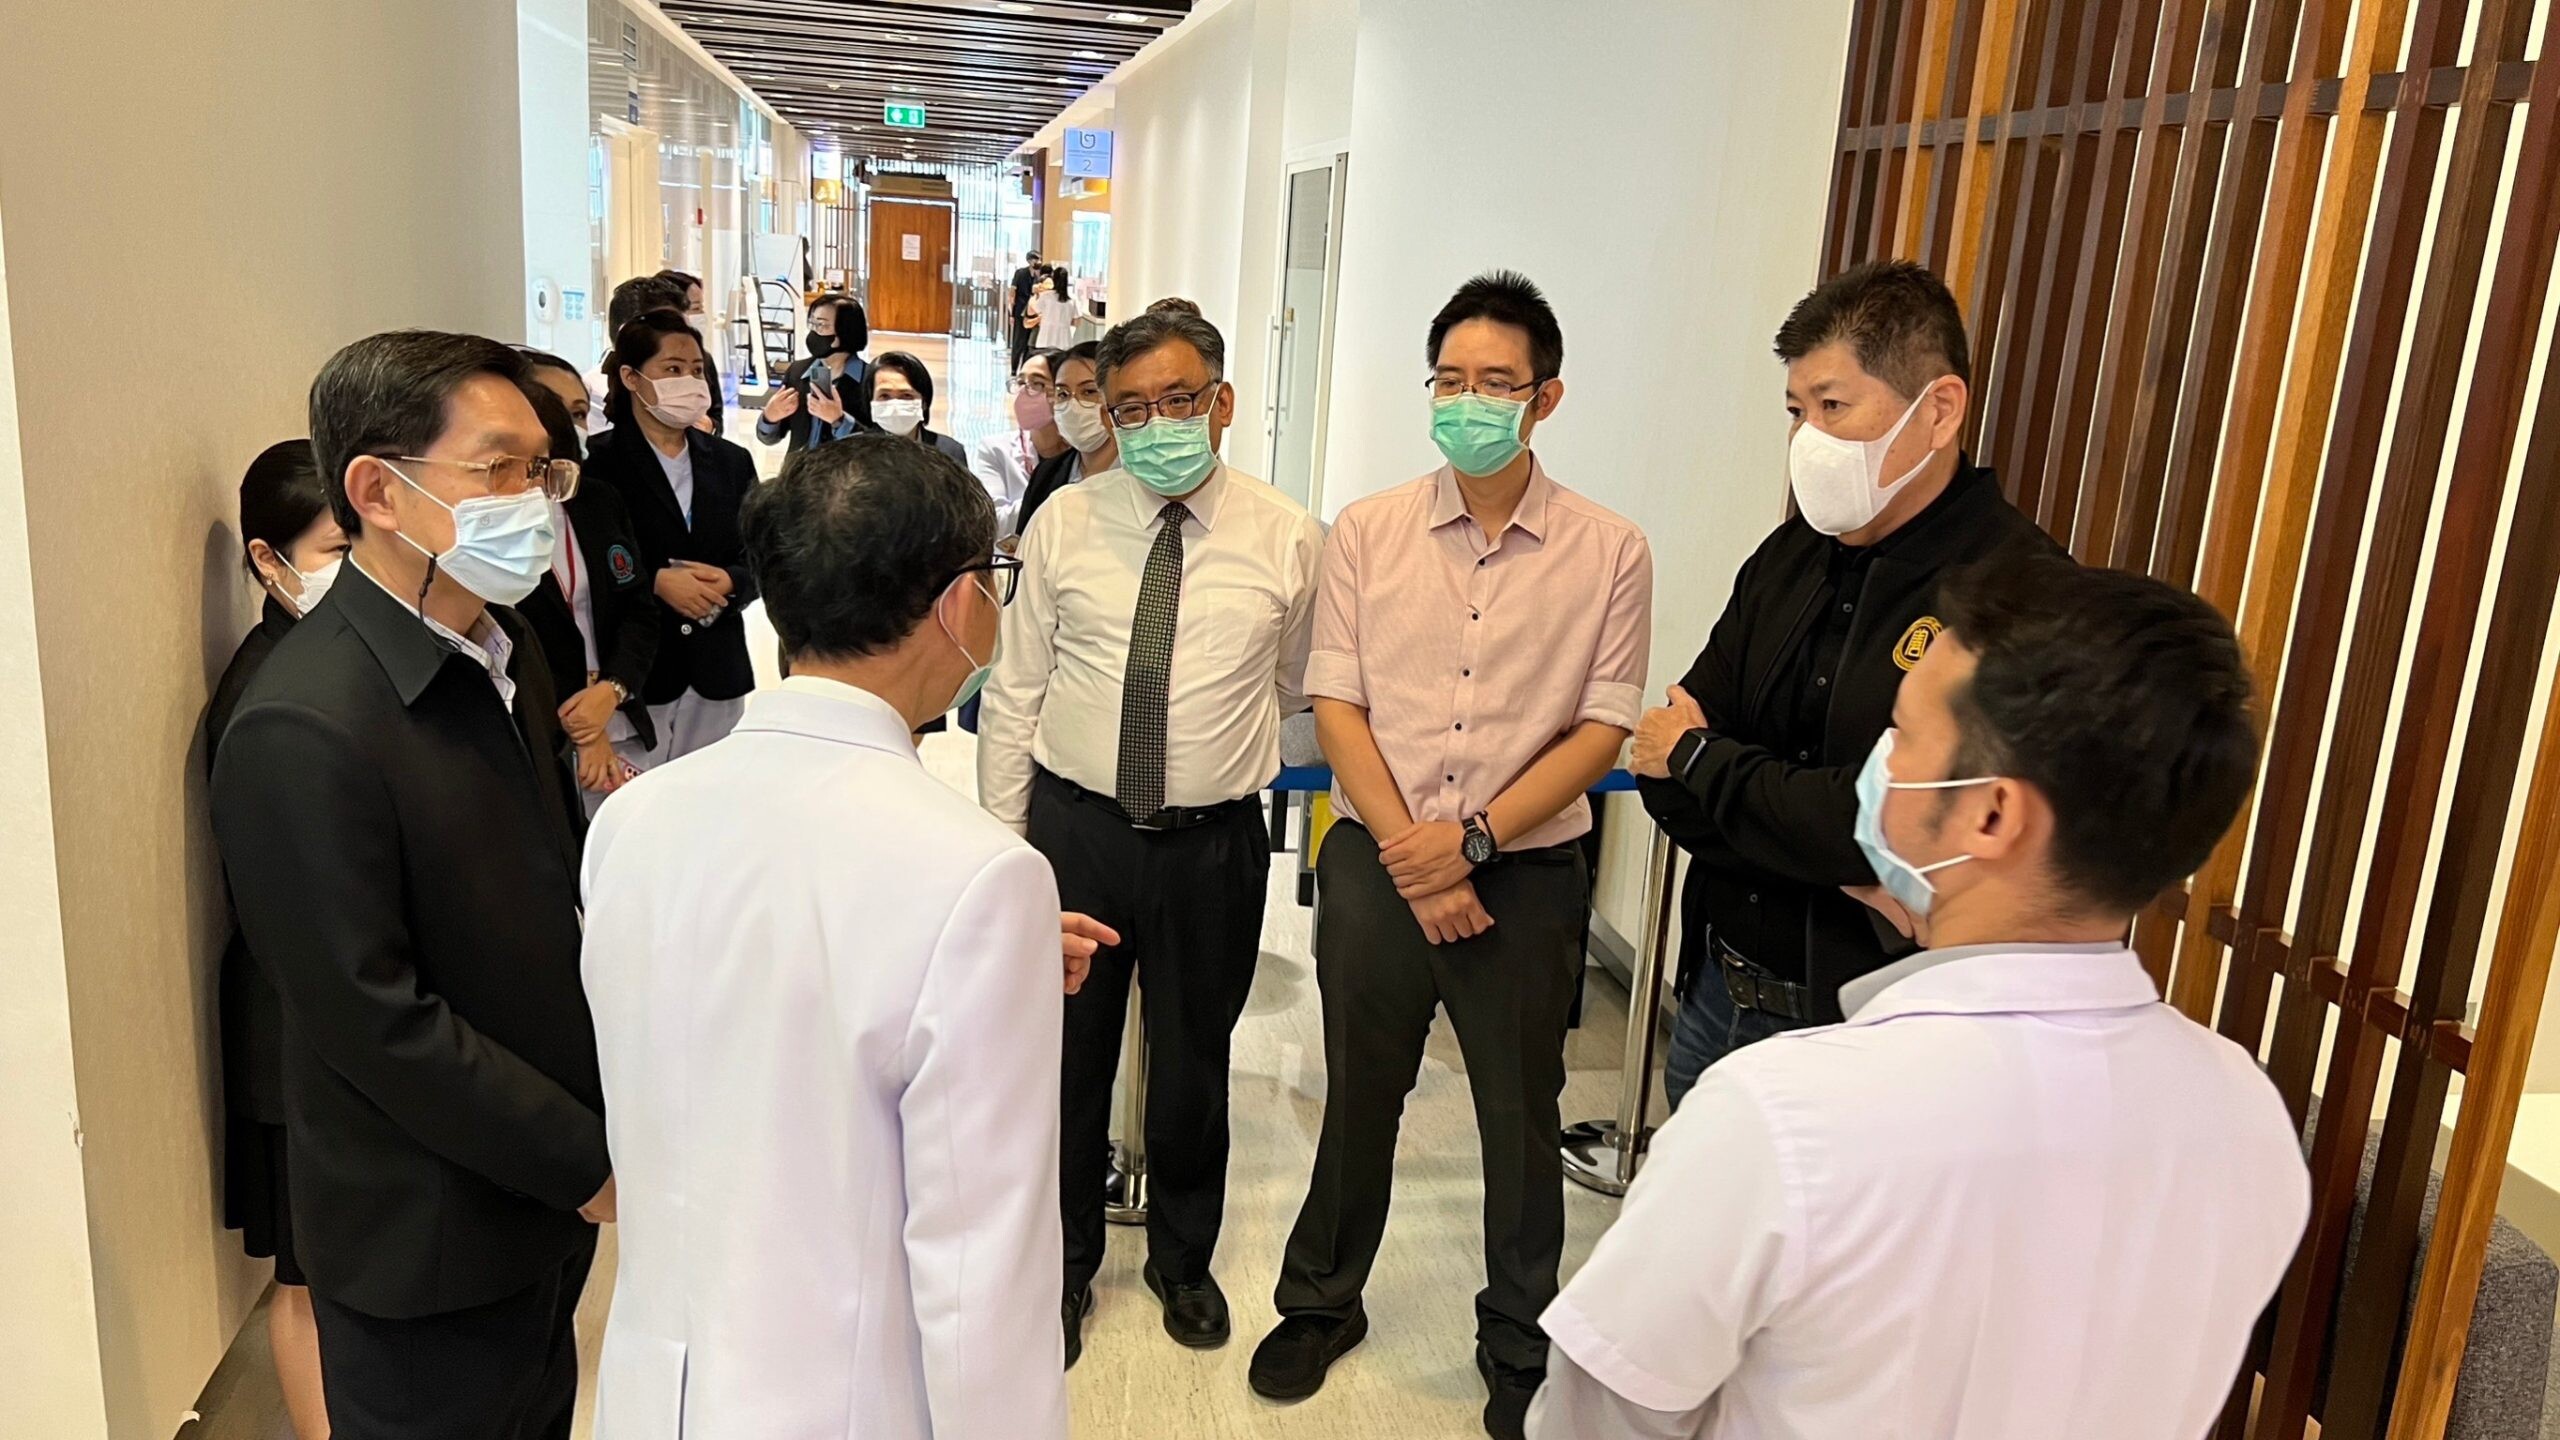 คลินิกการแพทย์แผนจีนหัวเฉียว เยี่ยมชมการดำเนินงานของสถานการแพทย์แผนไทยประยุกต์ คณะแพทย์ศาสตร์ศิริราชพยาบาล